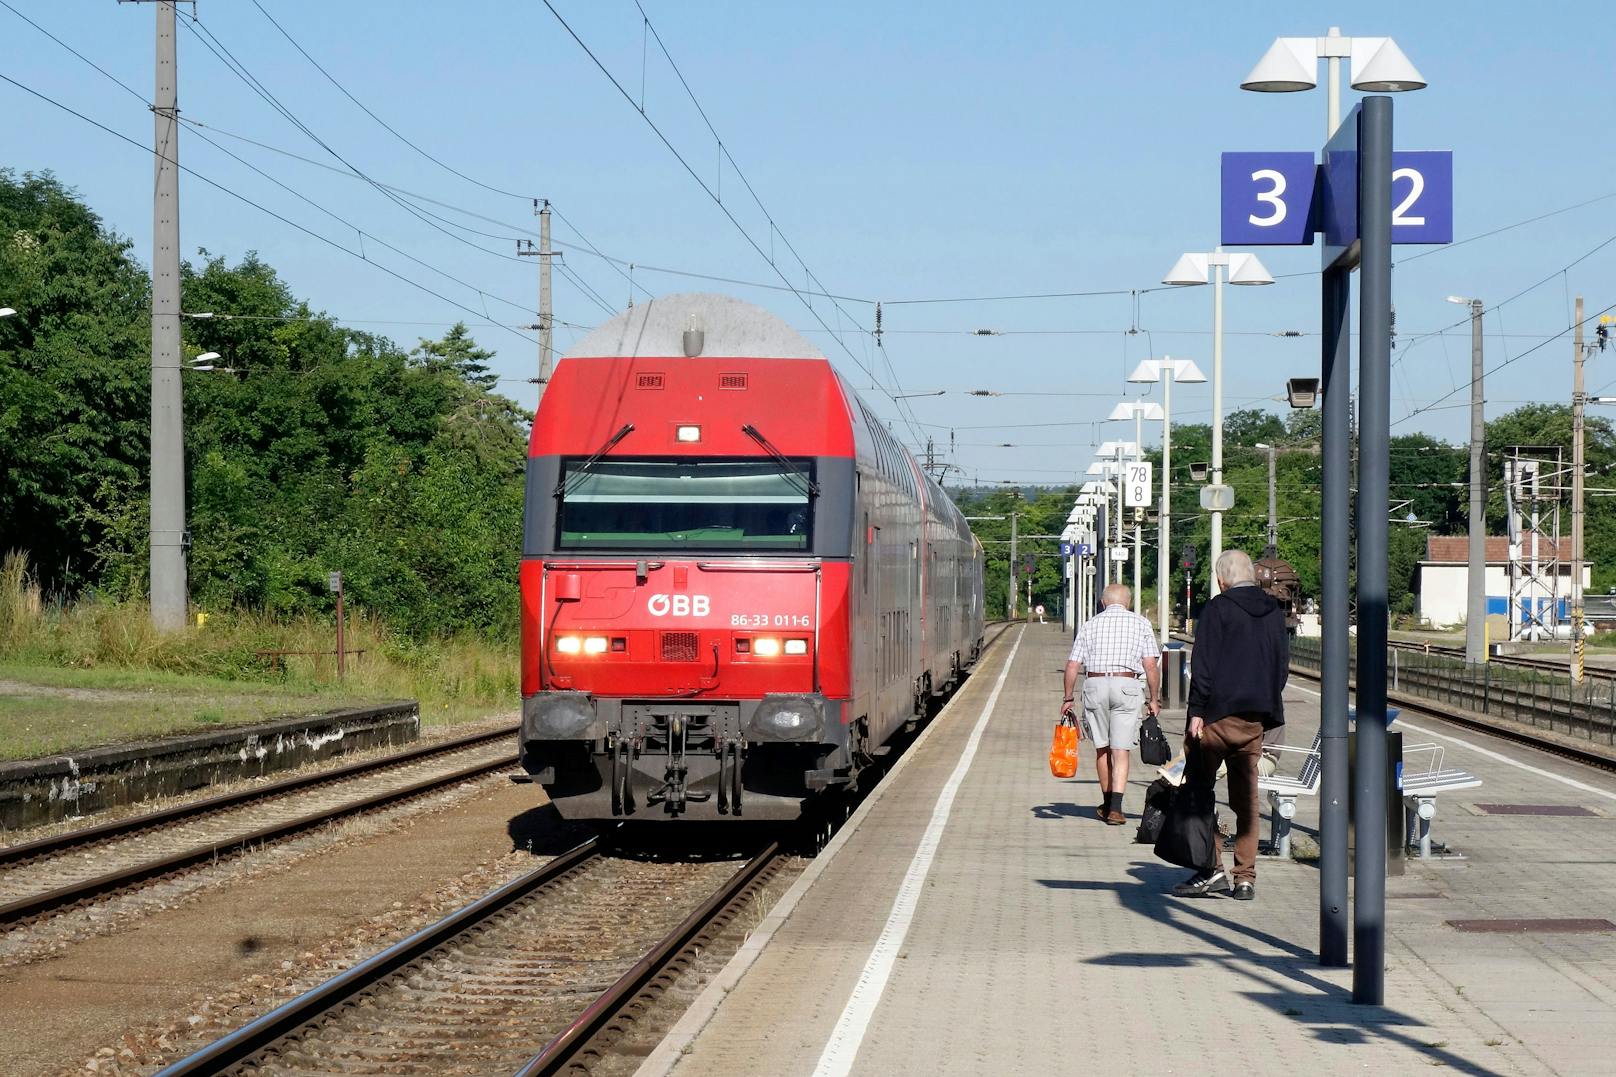 Trauriger Zwischenfall mit einem Zug in der Gemeinde Stans in Tirol (Symbolfoto)